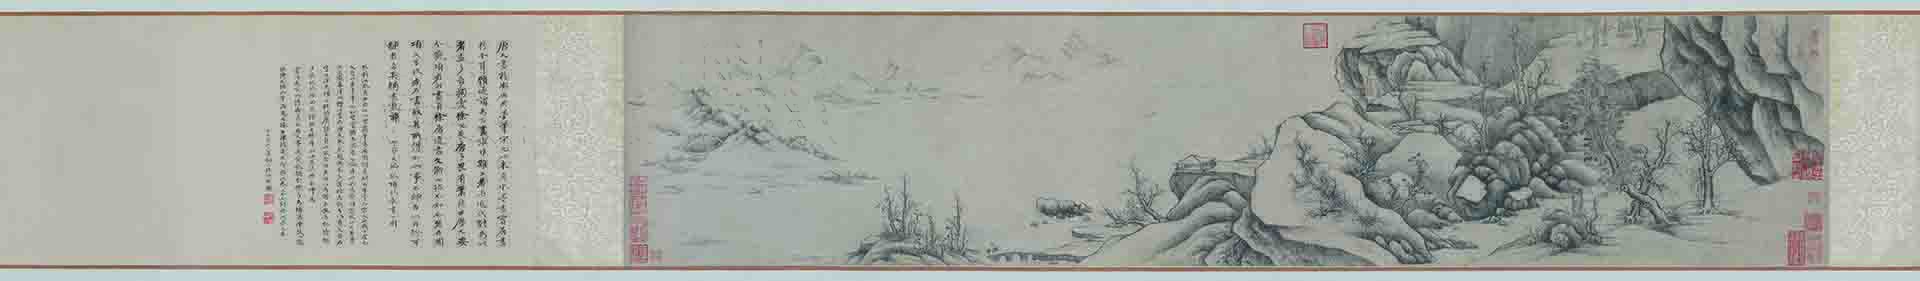 明 项圣谟 江山雪霁图手卷纸本(王永宁旧藏)44×207